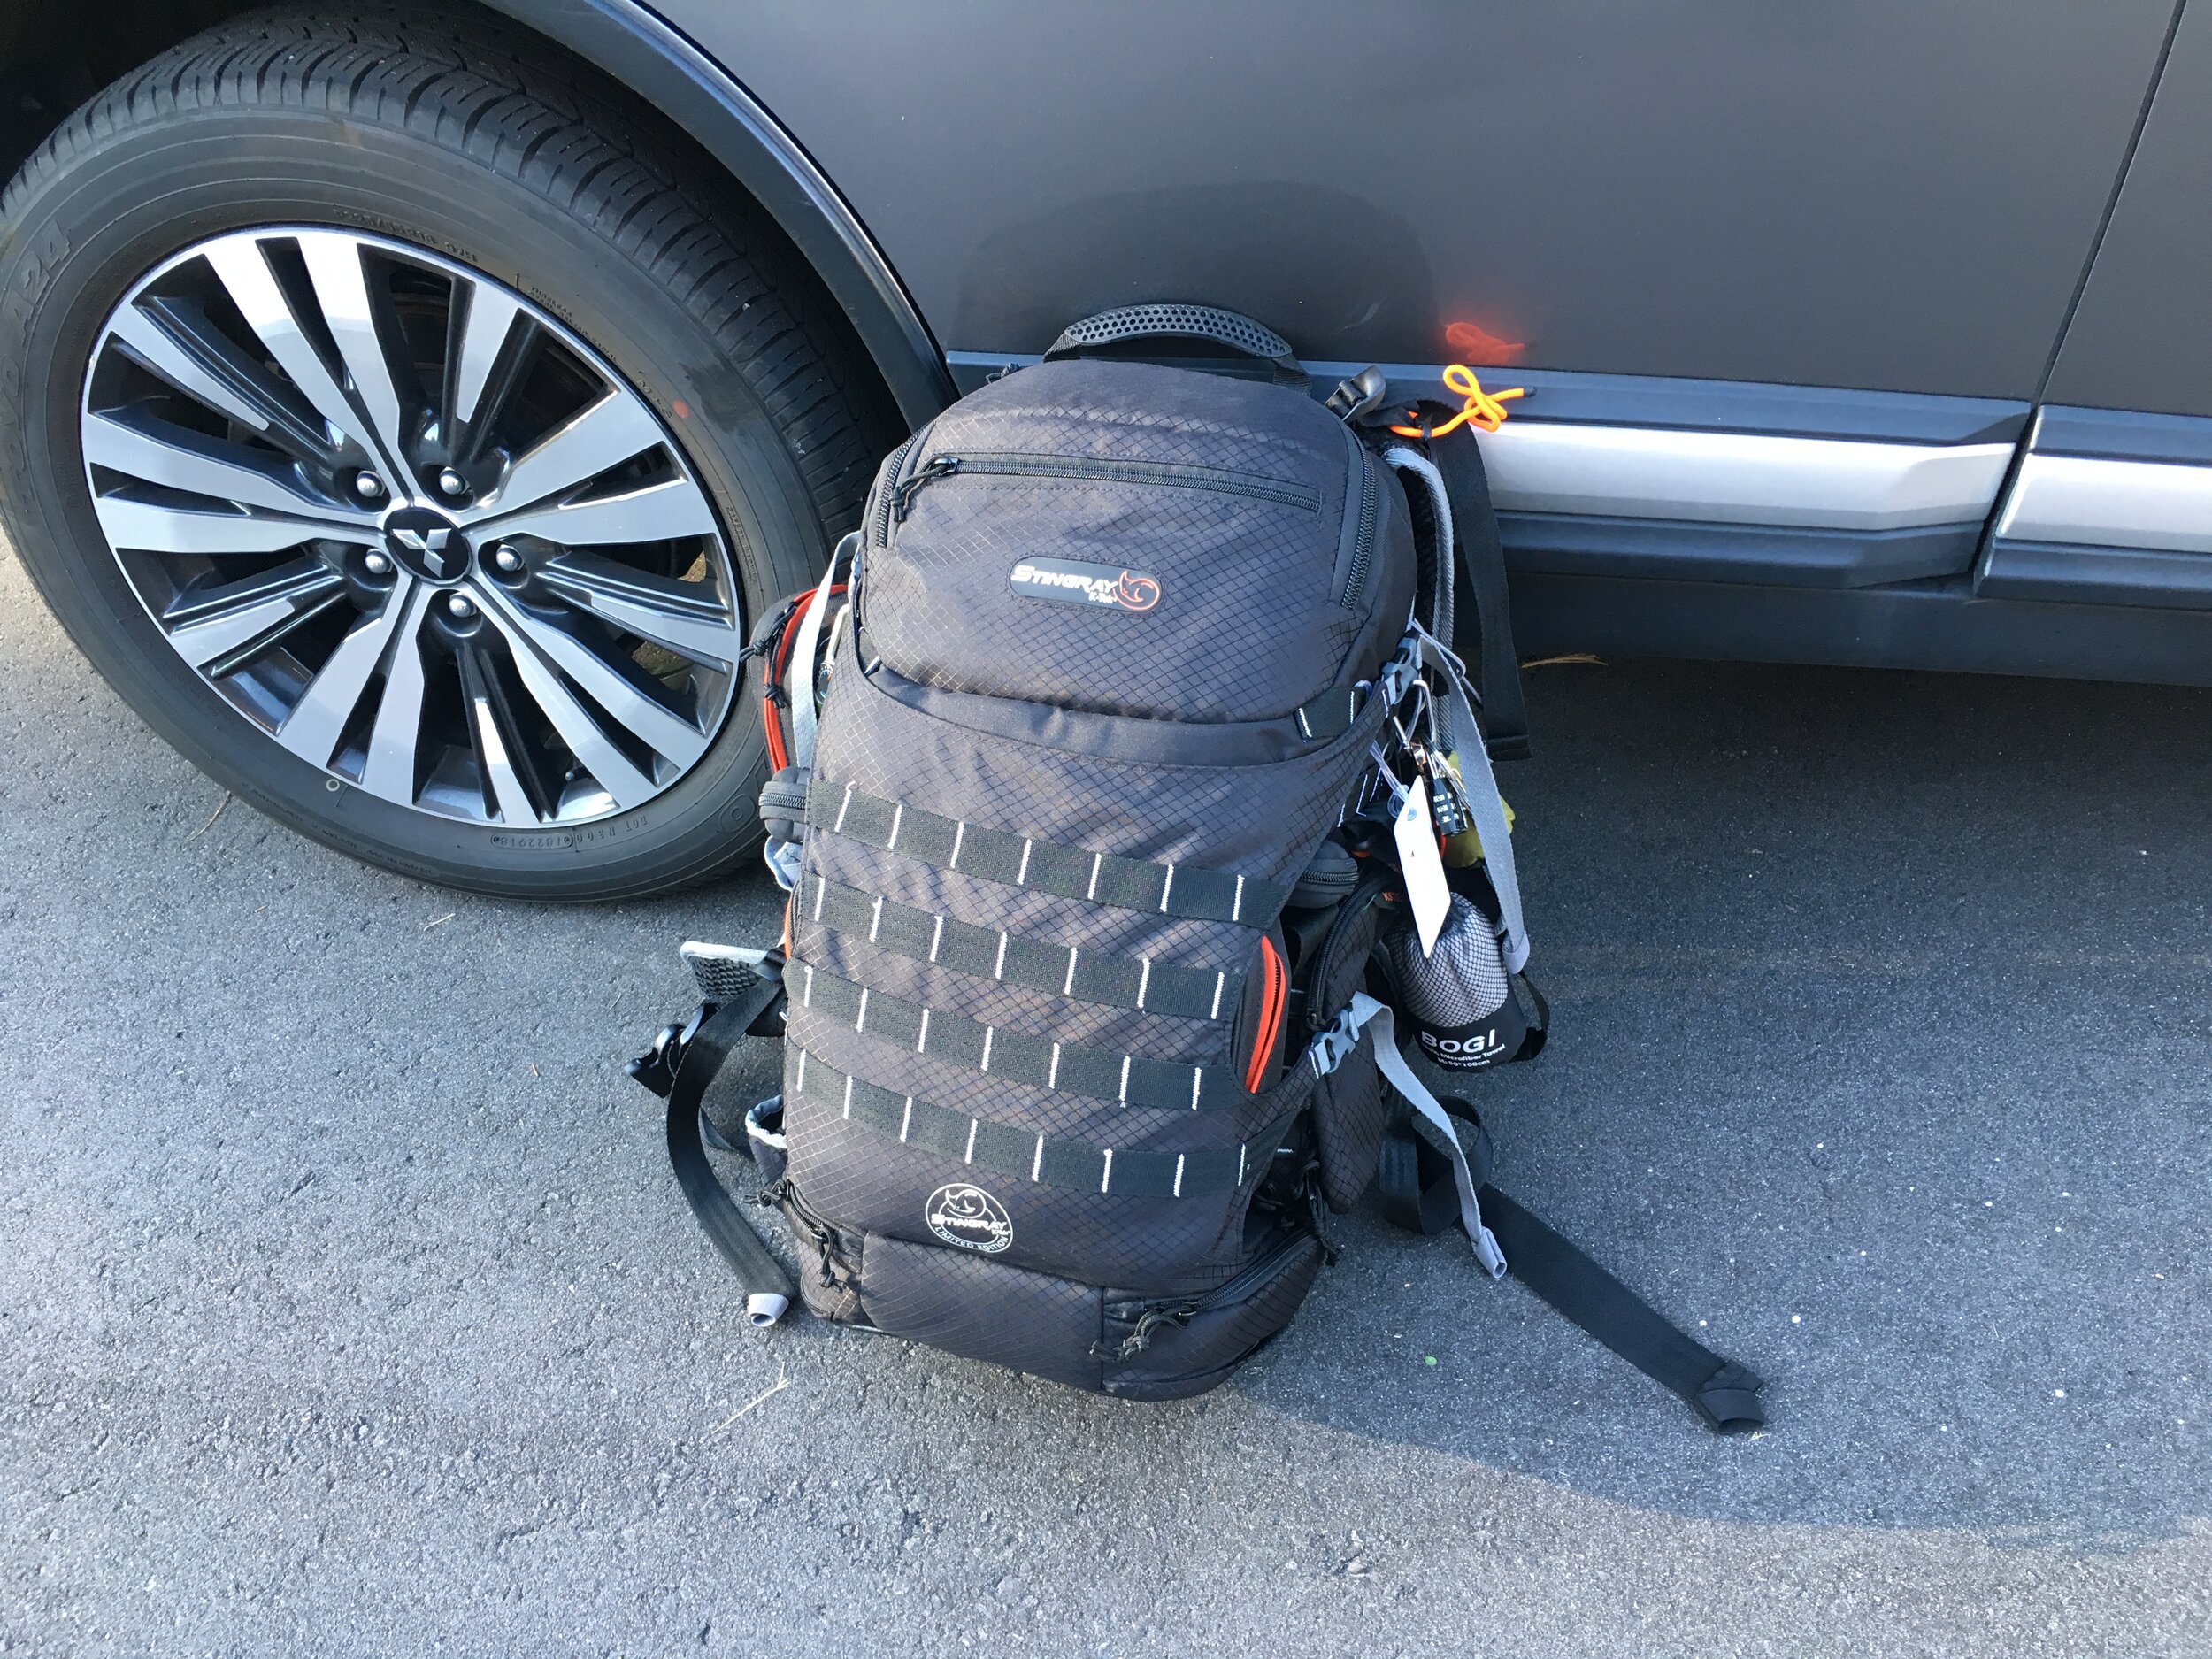 IMG_8200 K-Tek Stingray Backpack.JPG